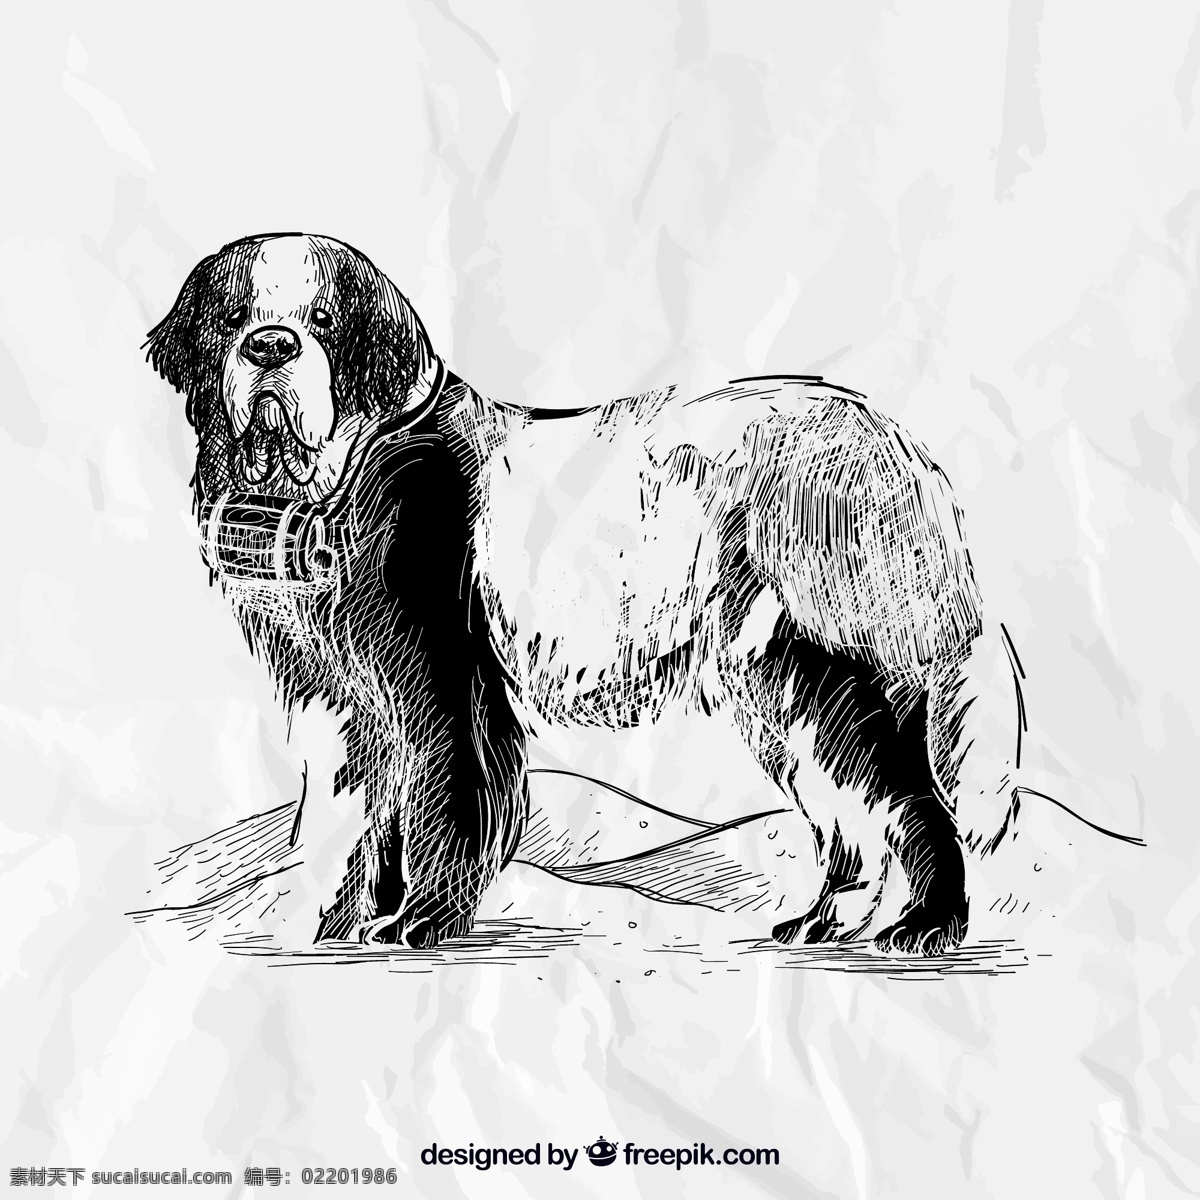 手绘 圣伯纳犬 狗 动物 名犬 宠物 插画 背景 纸张 褶皱 海报 画册 矢量动物 生物世界 家禽家畜 平面素材 白色